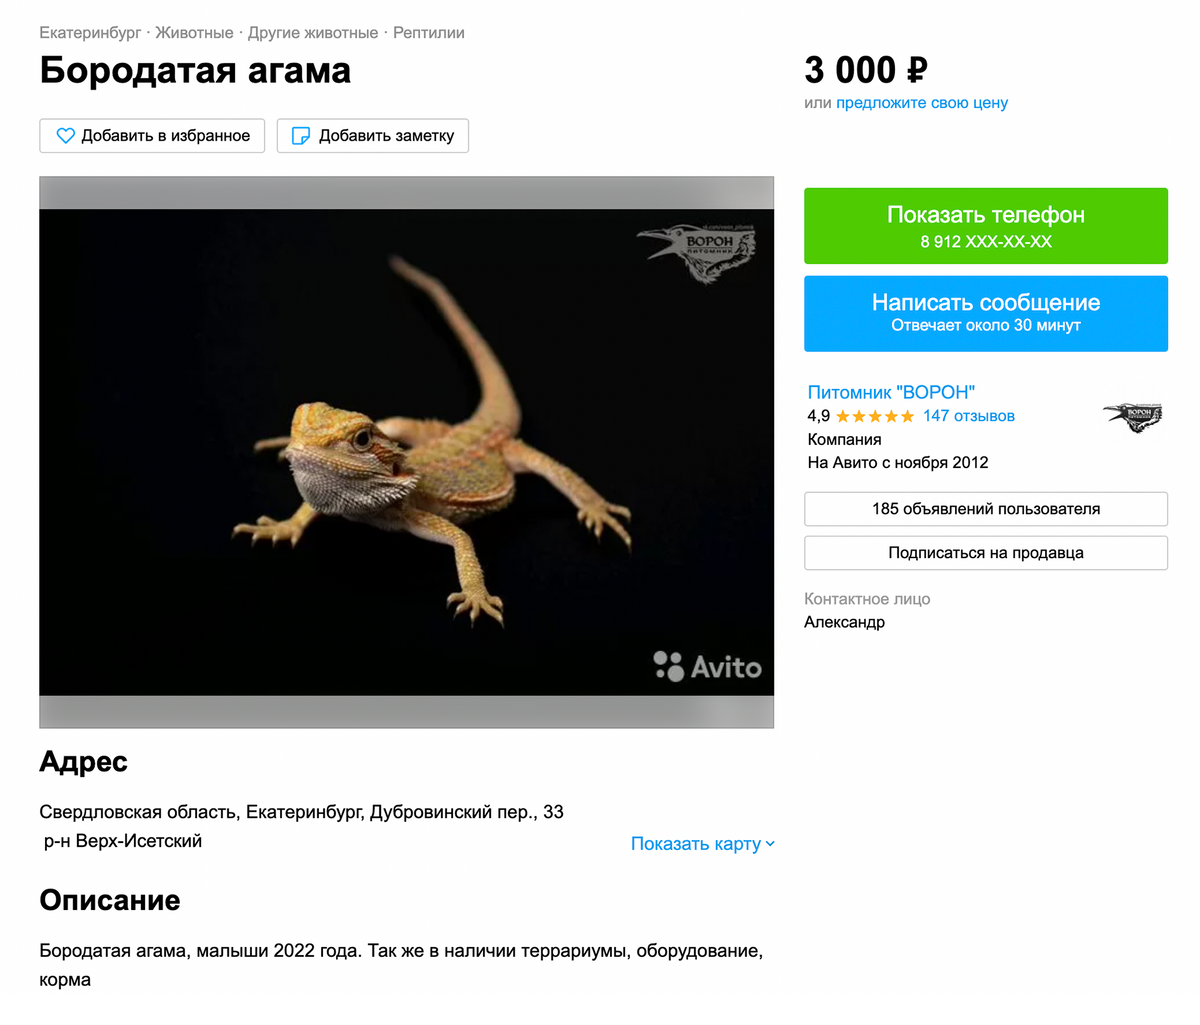 Этот питомник в Екатеринбурге предлагает агам за 3000 <span class=ruble>Р</span>, а также оборудование и корма. Источник: avito.ru